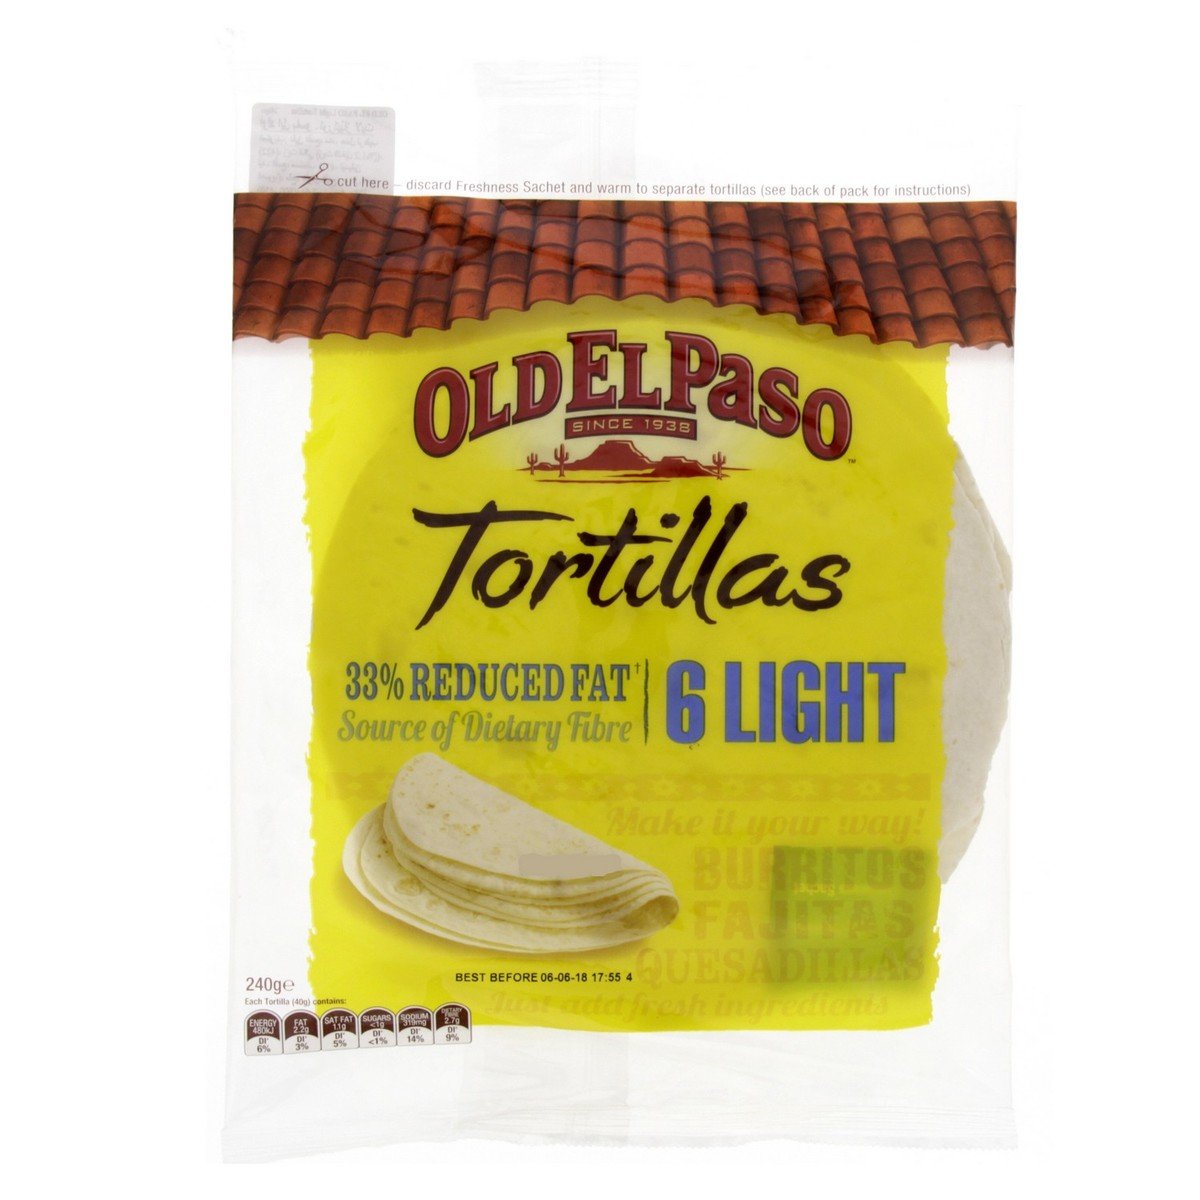 Old El Paso Tortillas 33% Reduced Fat 6 Light 240 g